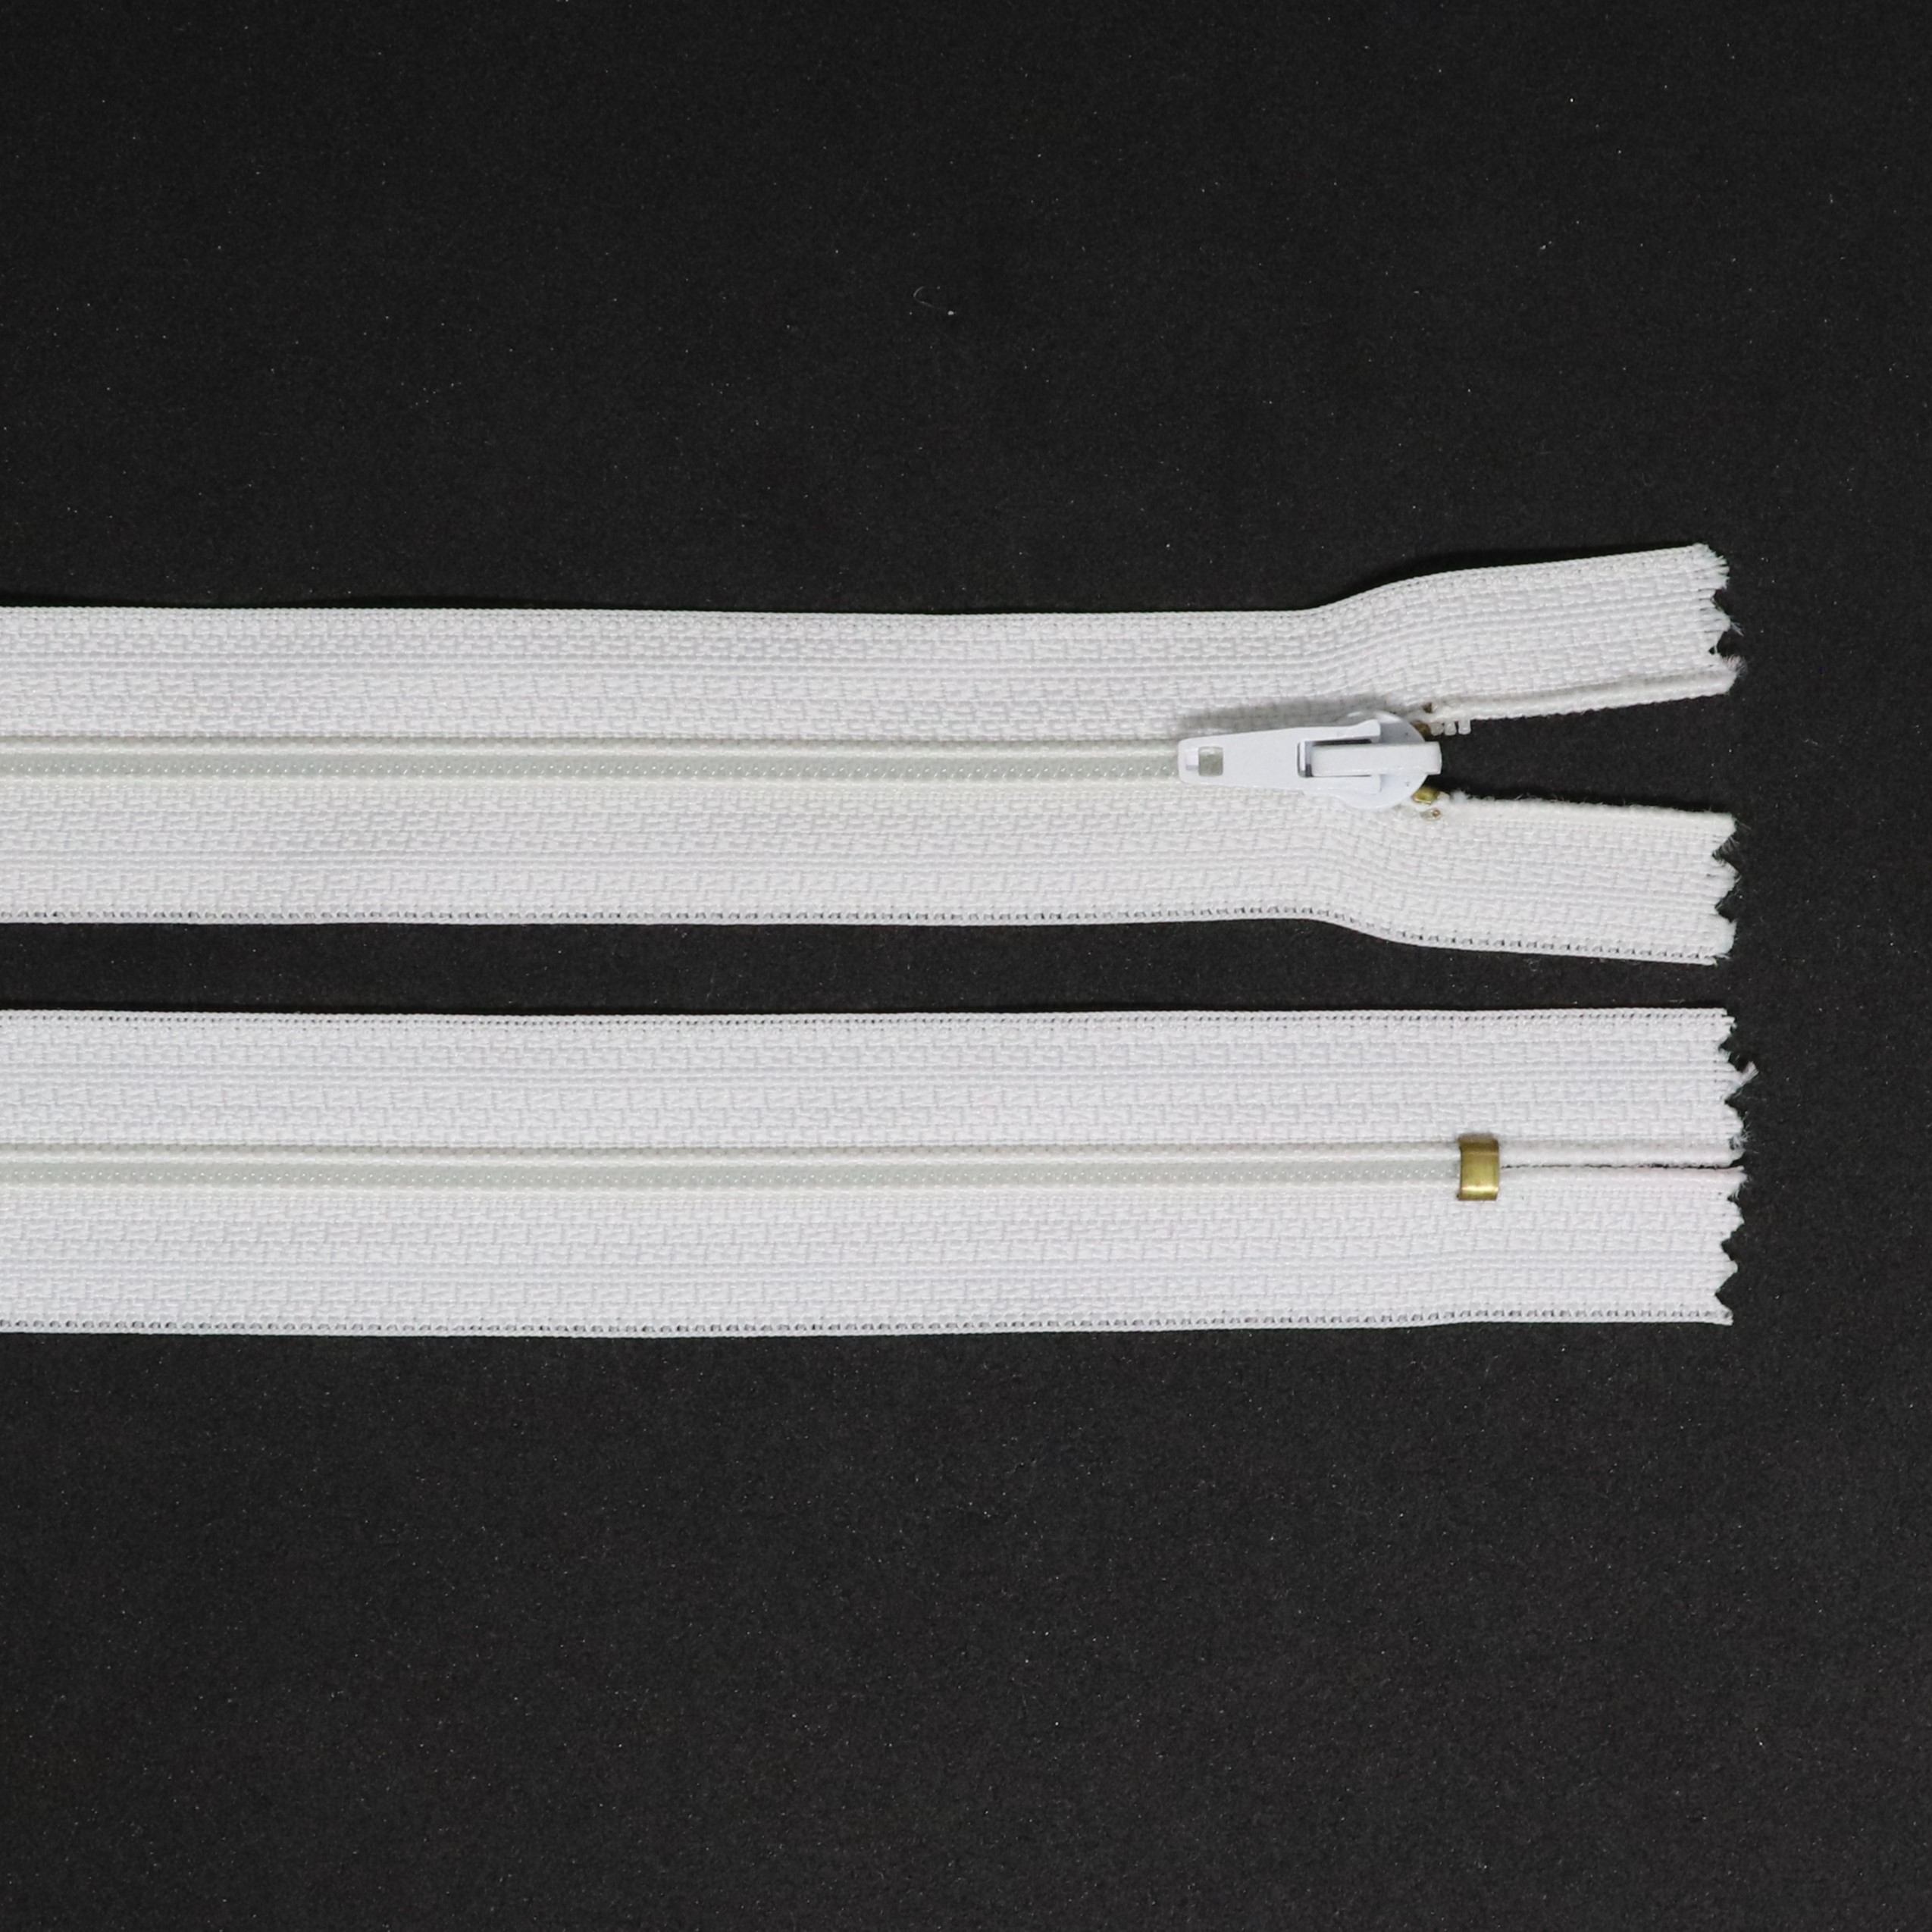 Spirálový zip, šíøe 3 mm, délka 22 cm, bílá - zvìtšit obrázek